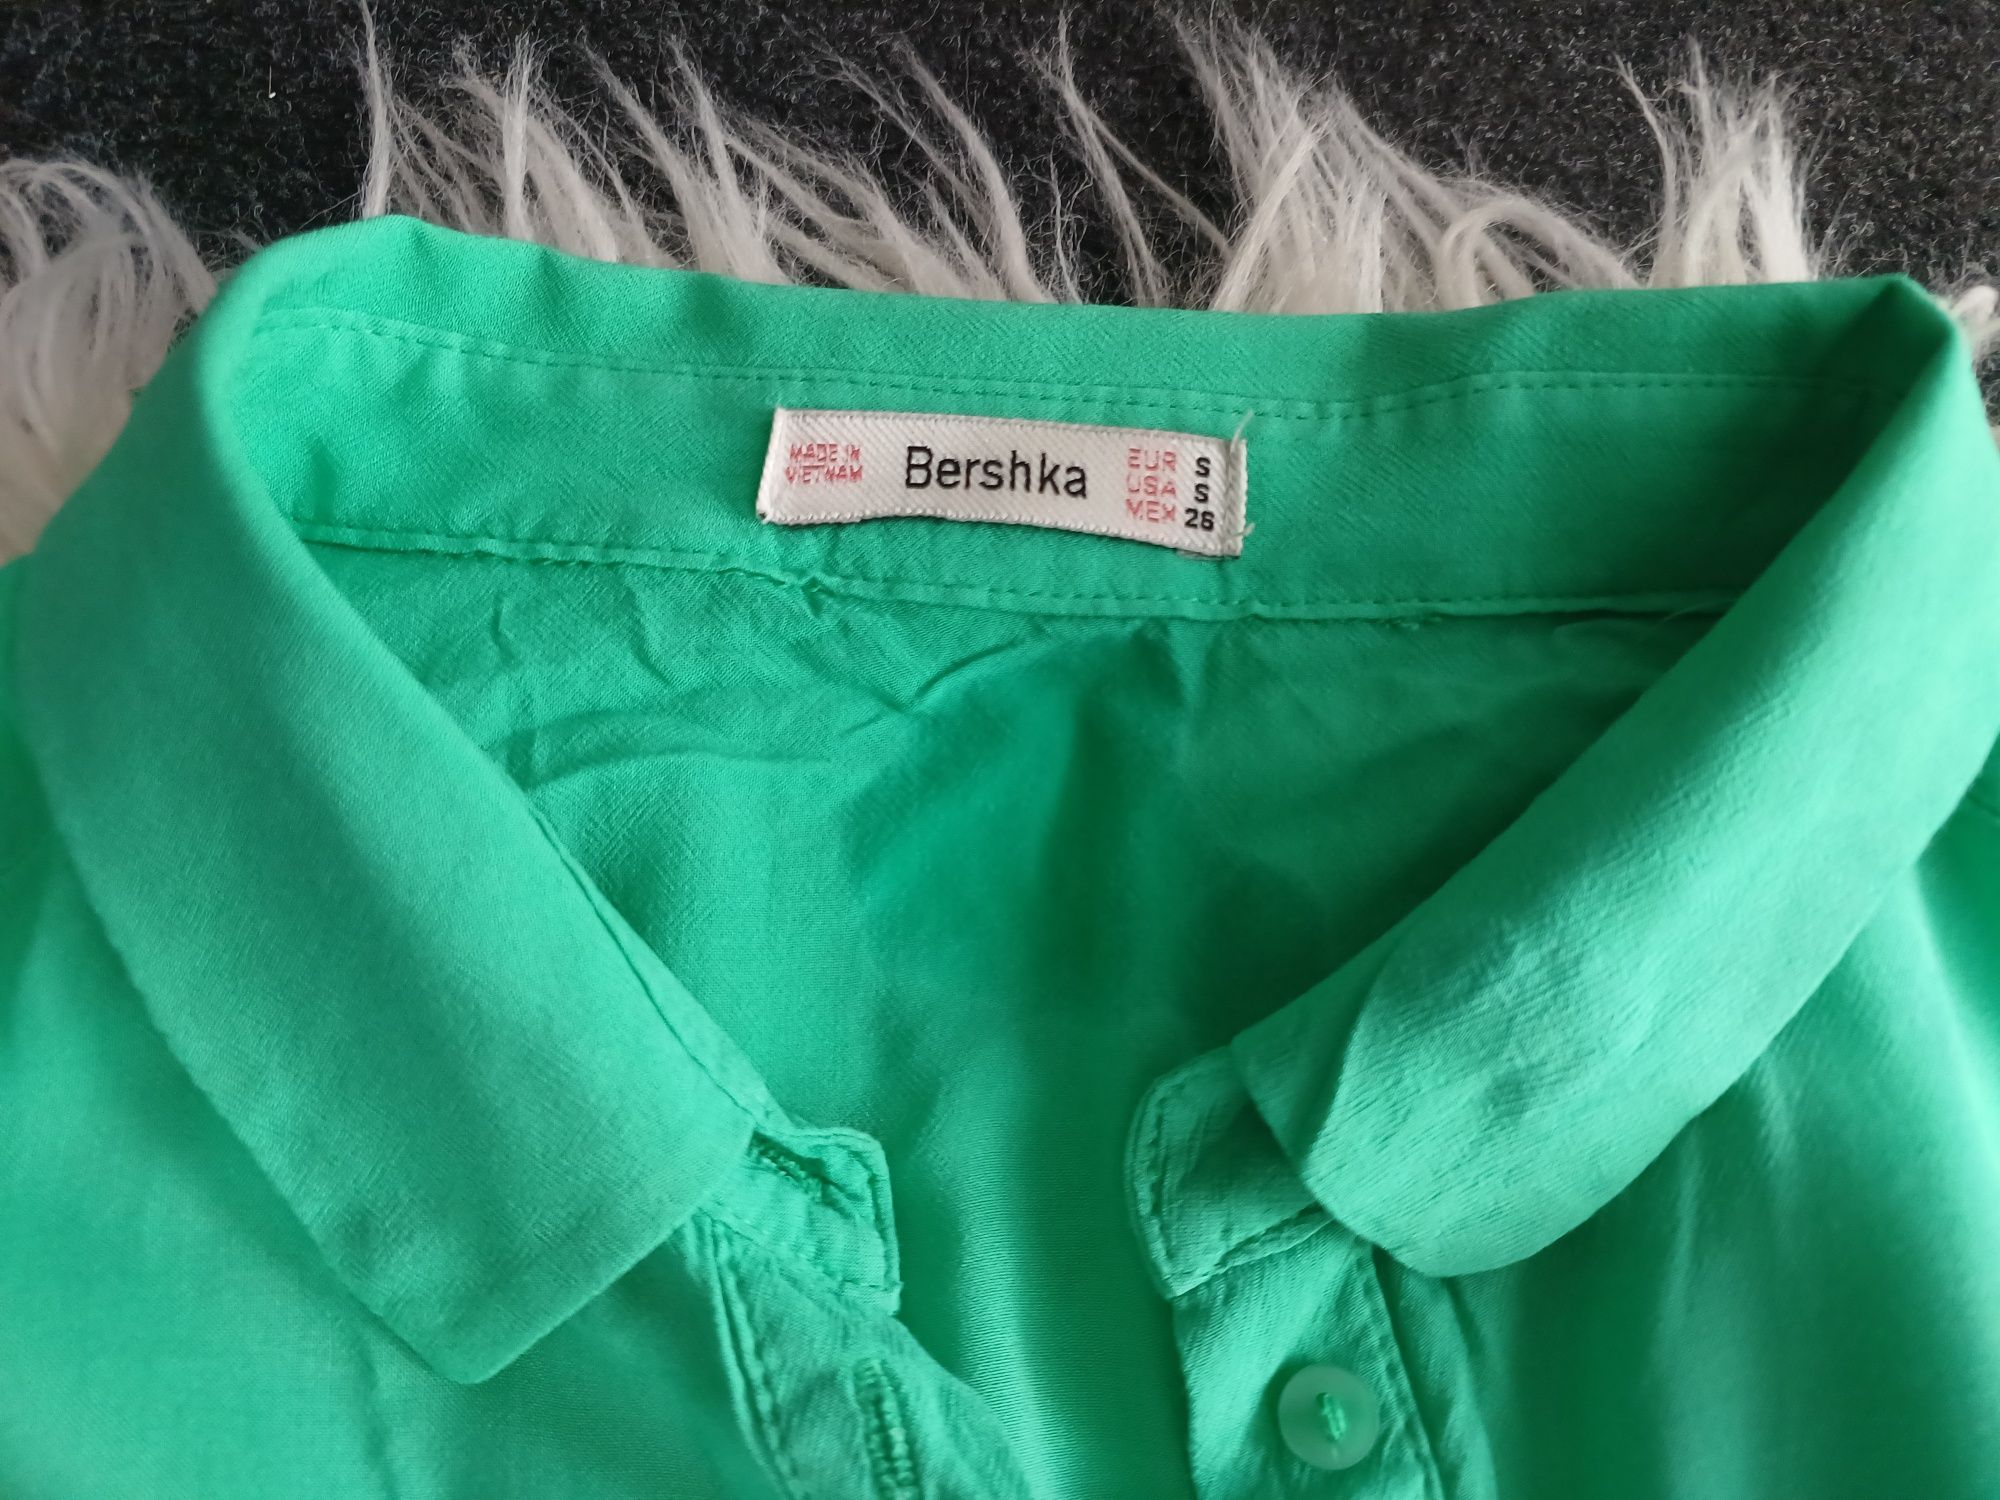 Bluzka Bershka zielona, rozmiar S.